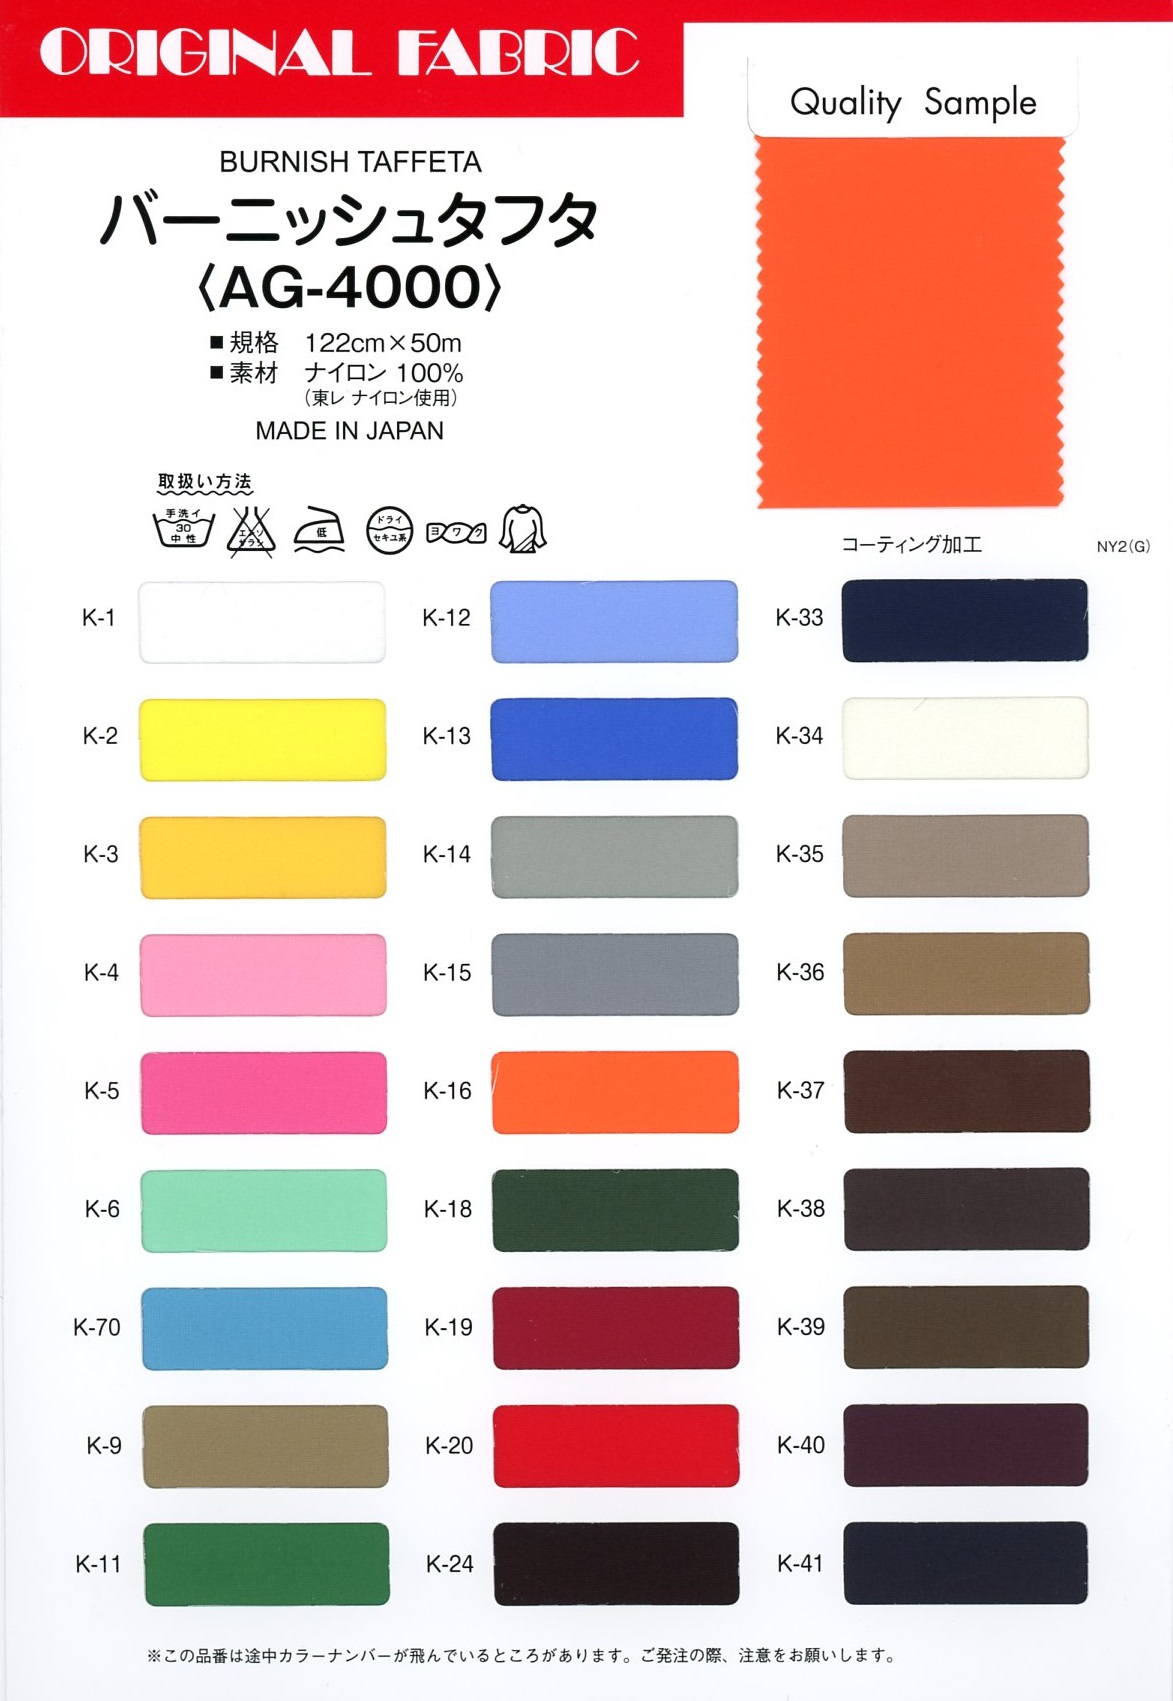 AG-4000 Burnish Taffeta[Textile / Fabric] Masuda